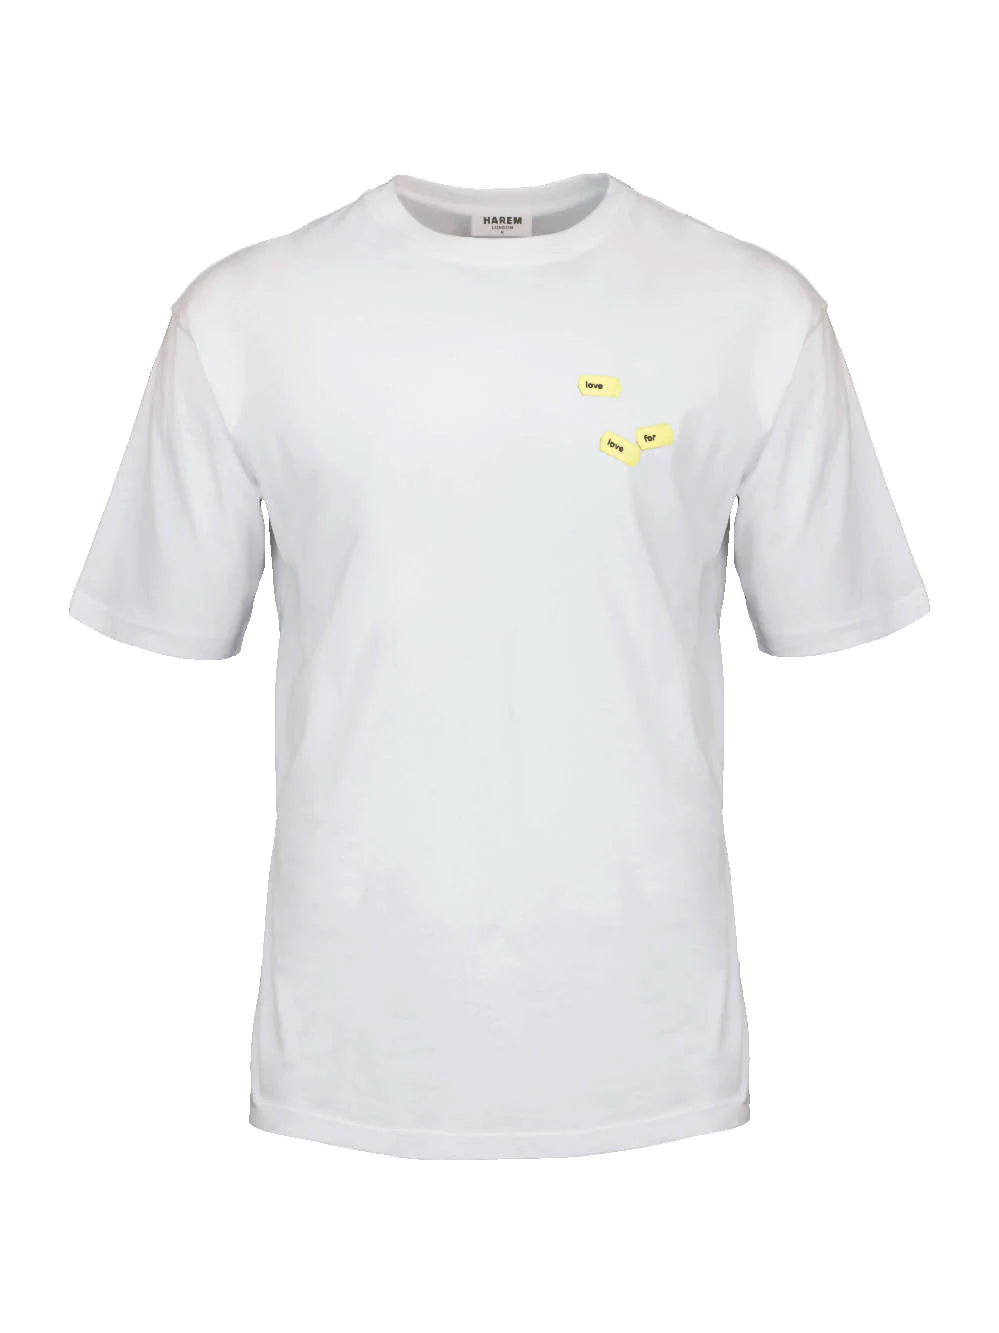 harem london White Organic Love T-shirt